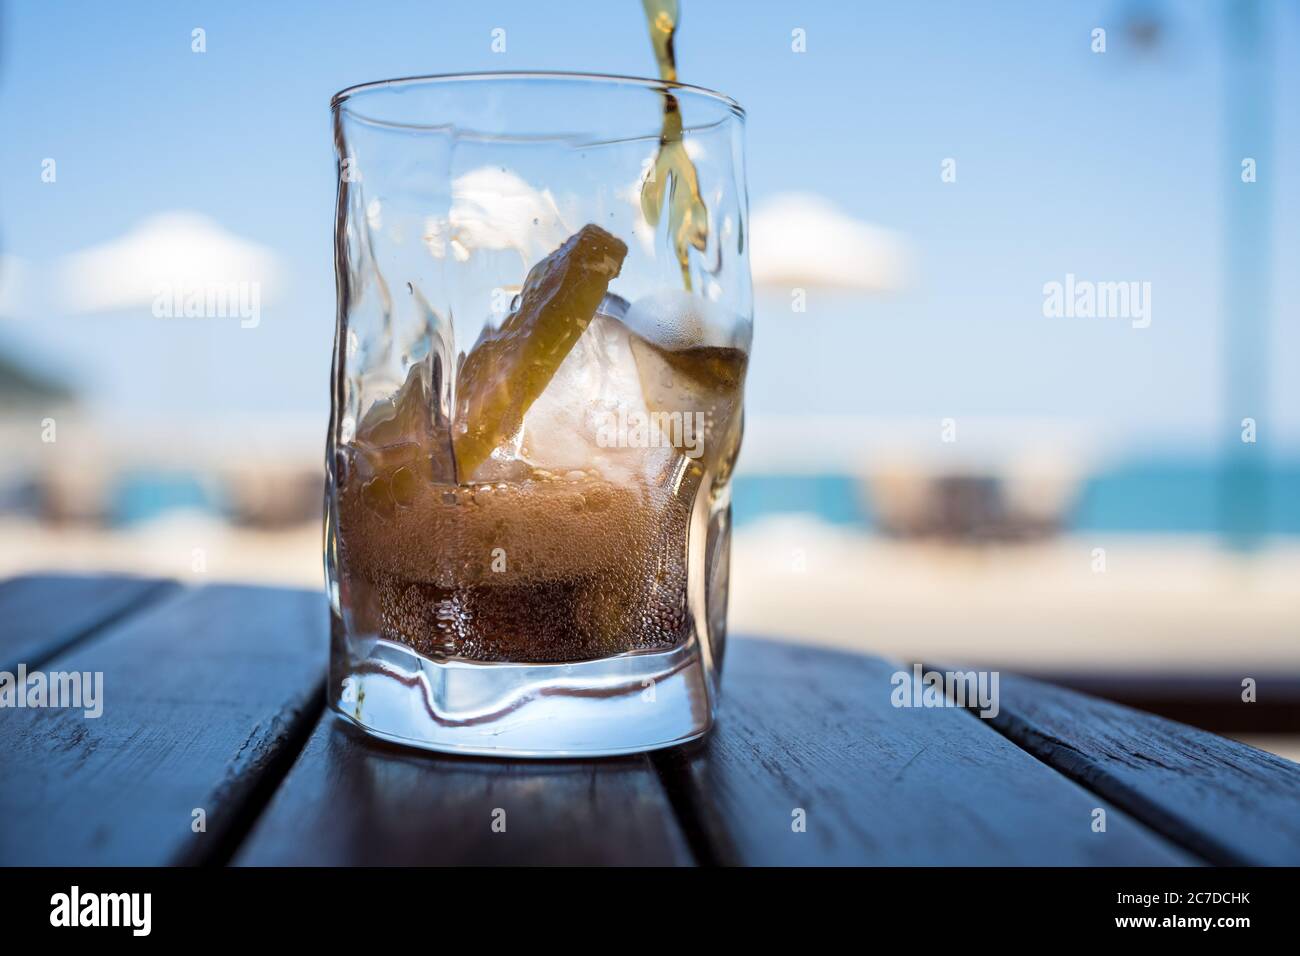 Ein Softdrink wird in ein Glas mit Eis und Zitrone gegossen, im Hintergrund sieht man Sonnenschirme, Himmel und Strand. Stockfoto